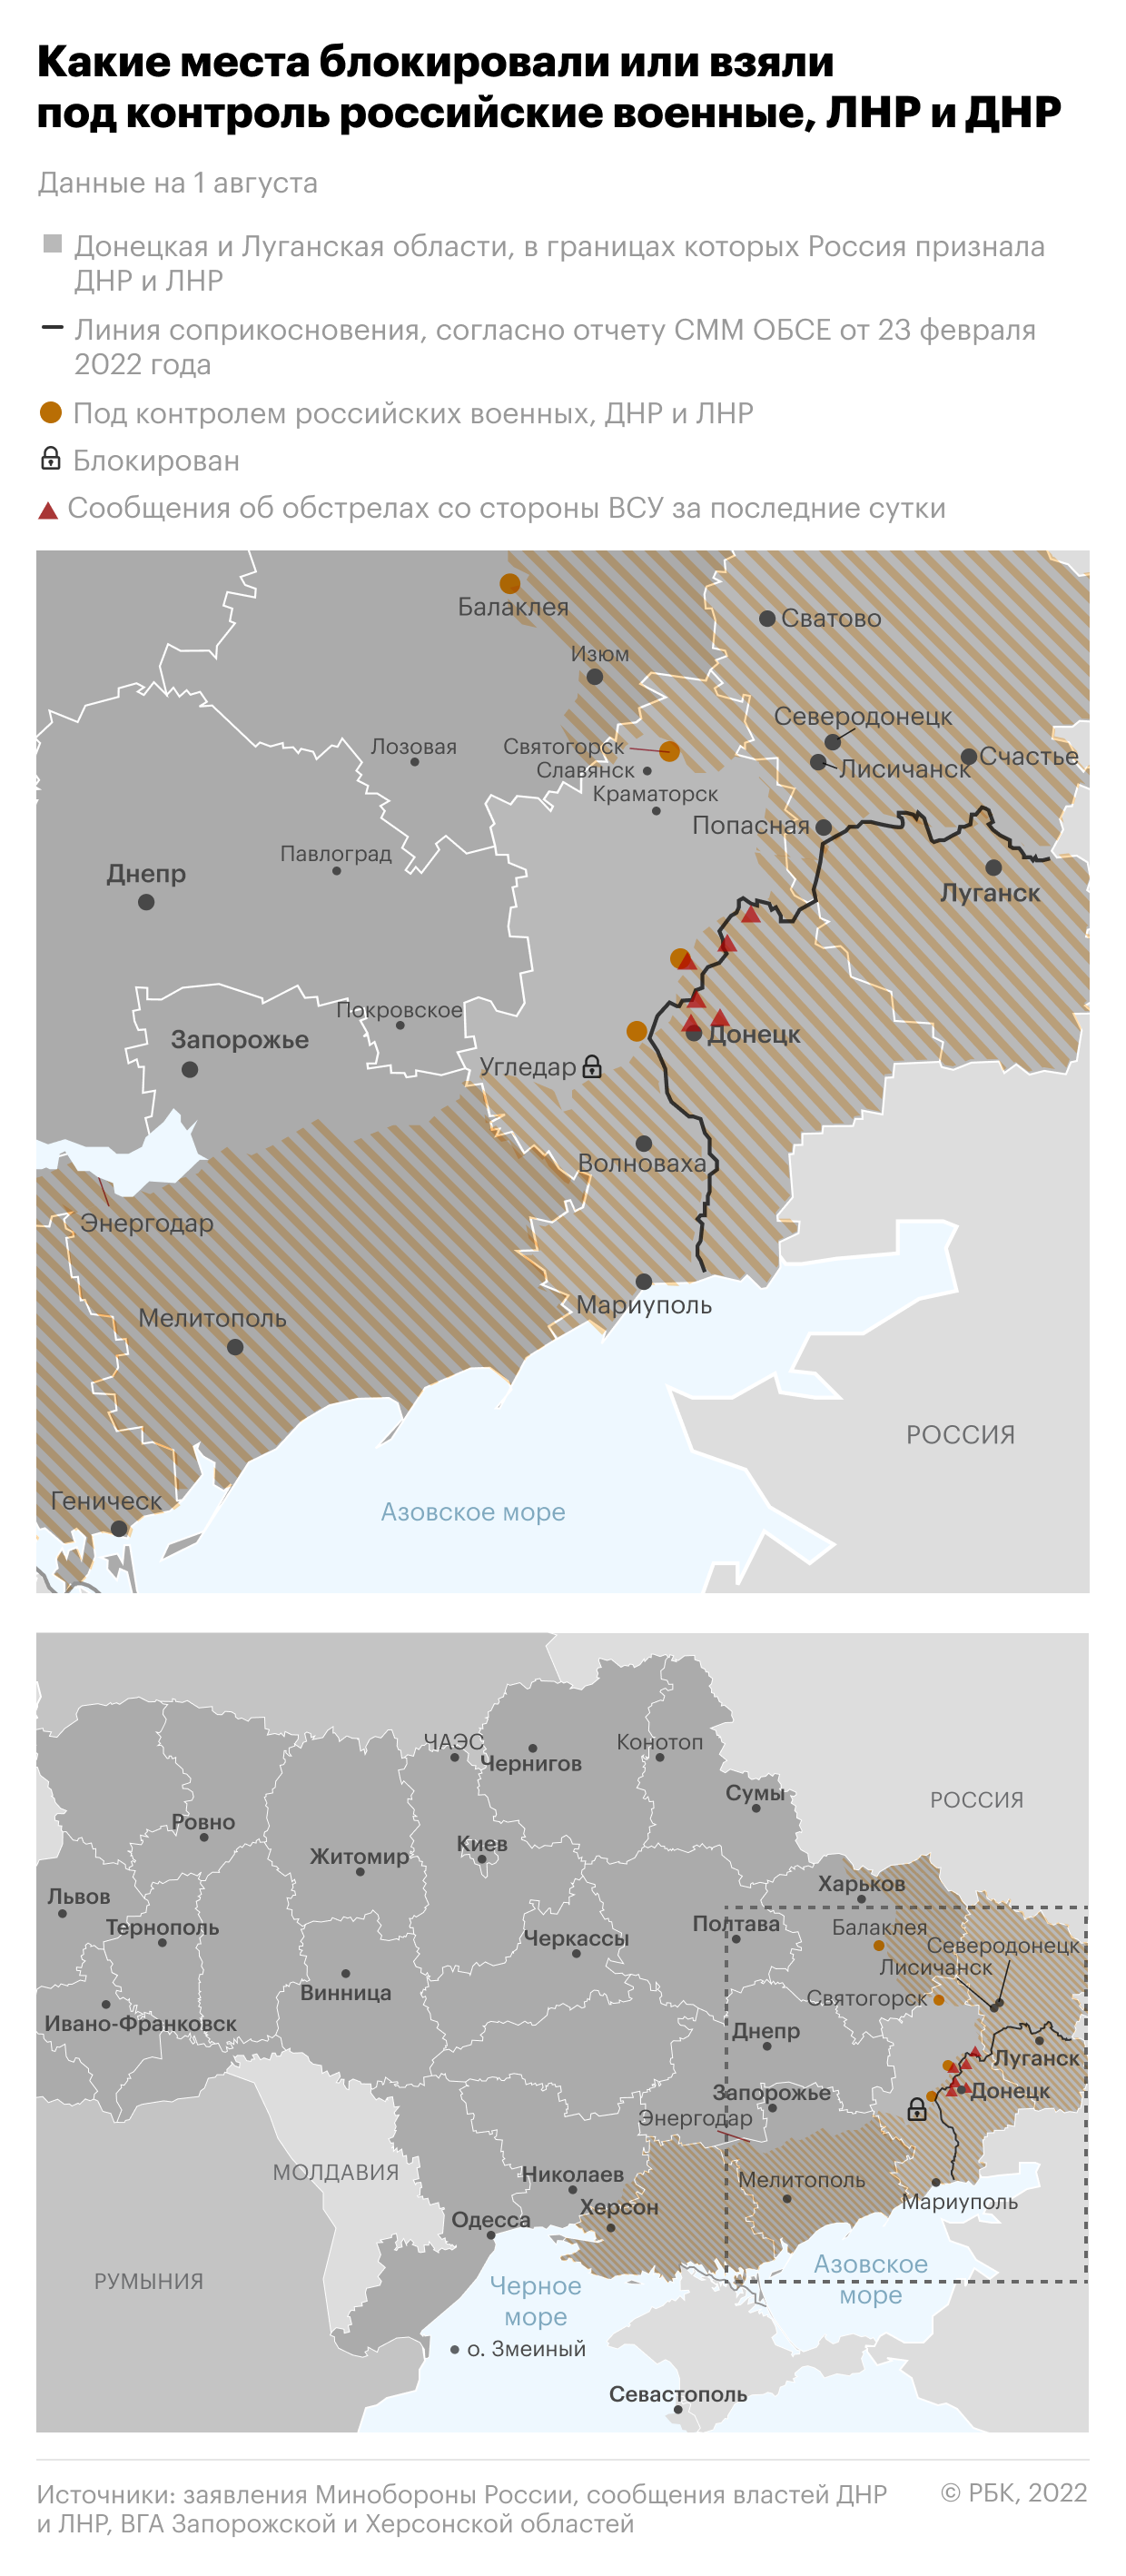 Байден одобрил выделение Украине пакета военной помощи на $550 млн"/>













